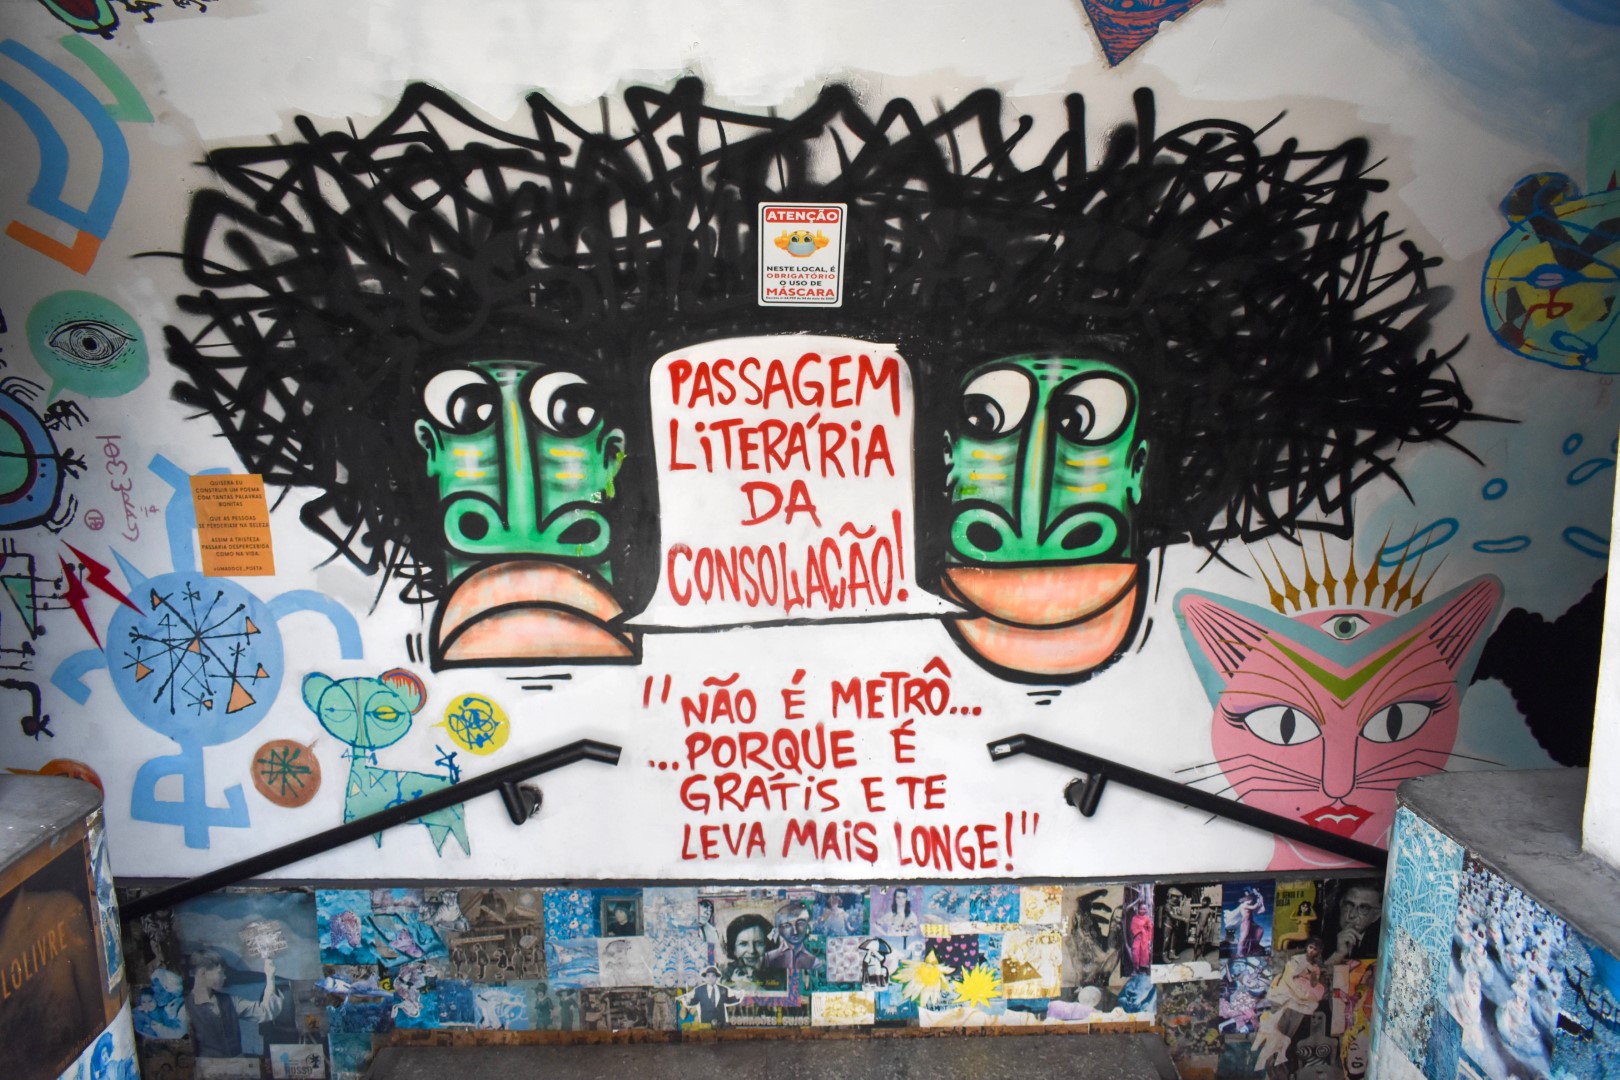 Passagem Literária da Consolação, R. da Consolação - Consolação, São Paulo